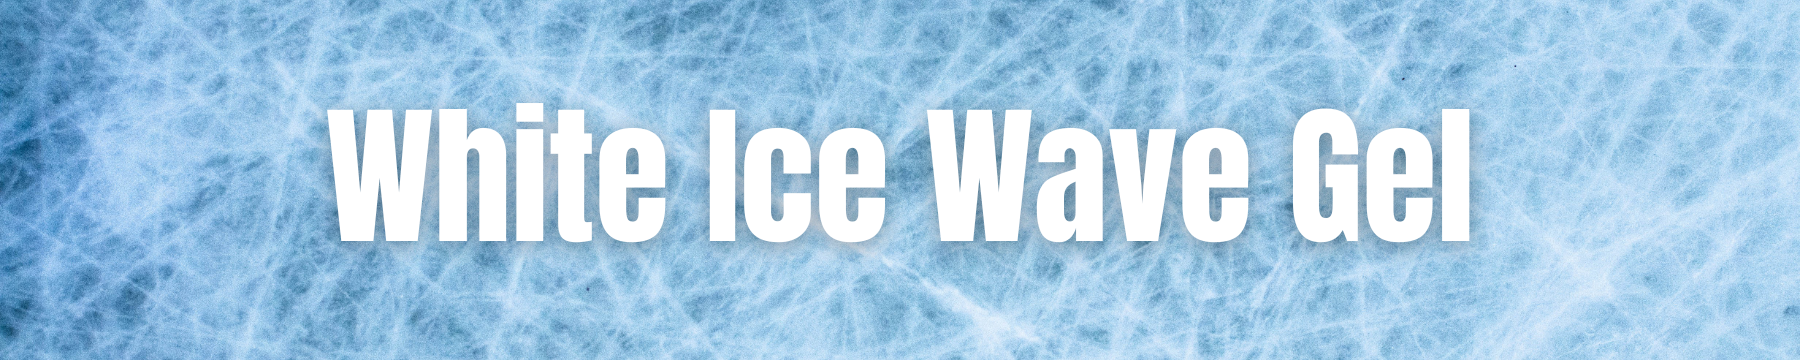 Wave Gel - White Ice